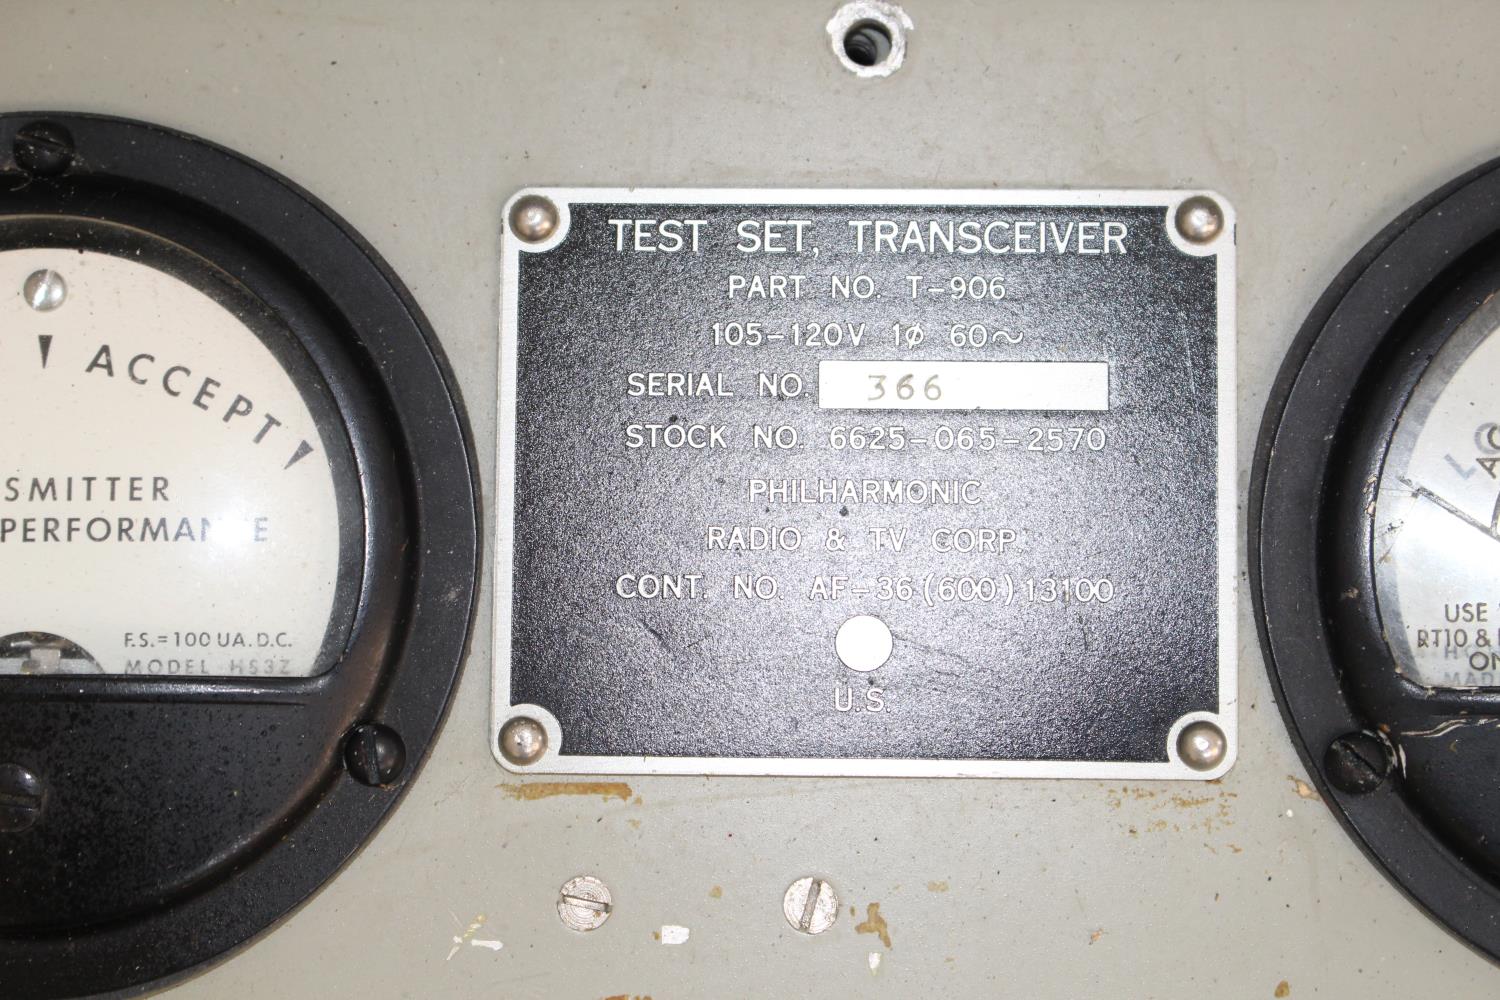 Cased Transceiver Test Set Part No T906 - Image 2 of 2